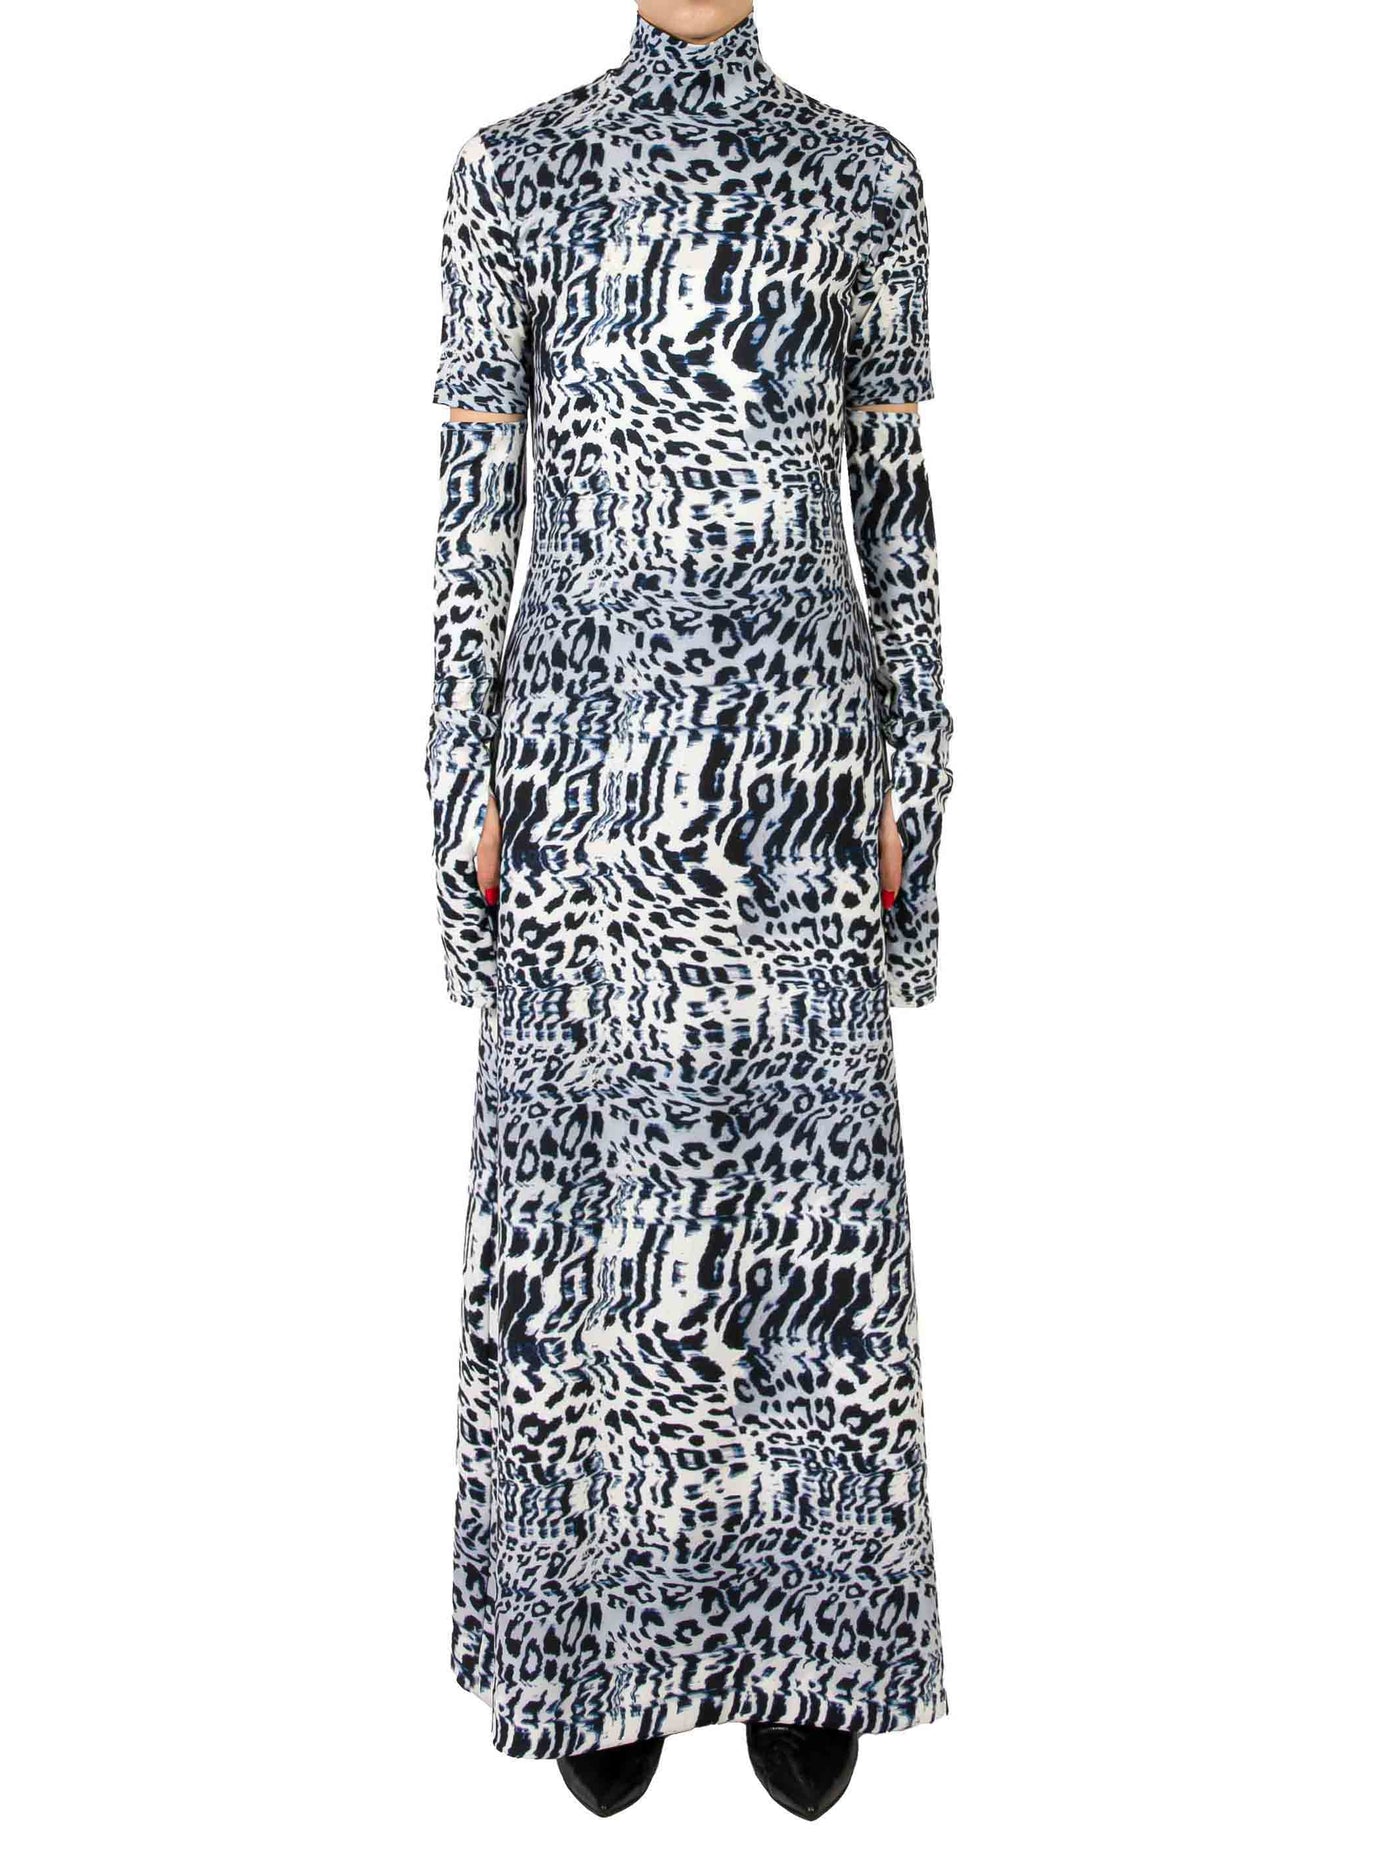 Leopard print cut-off dress